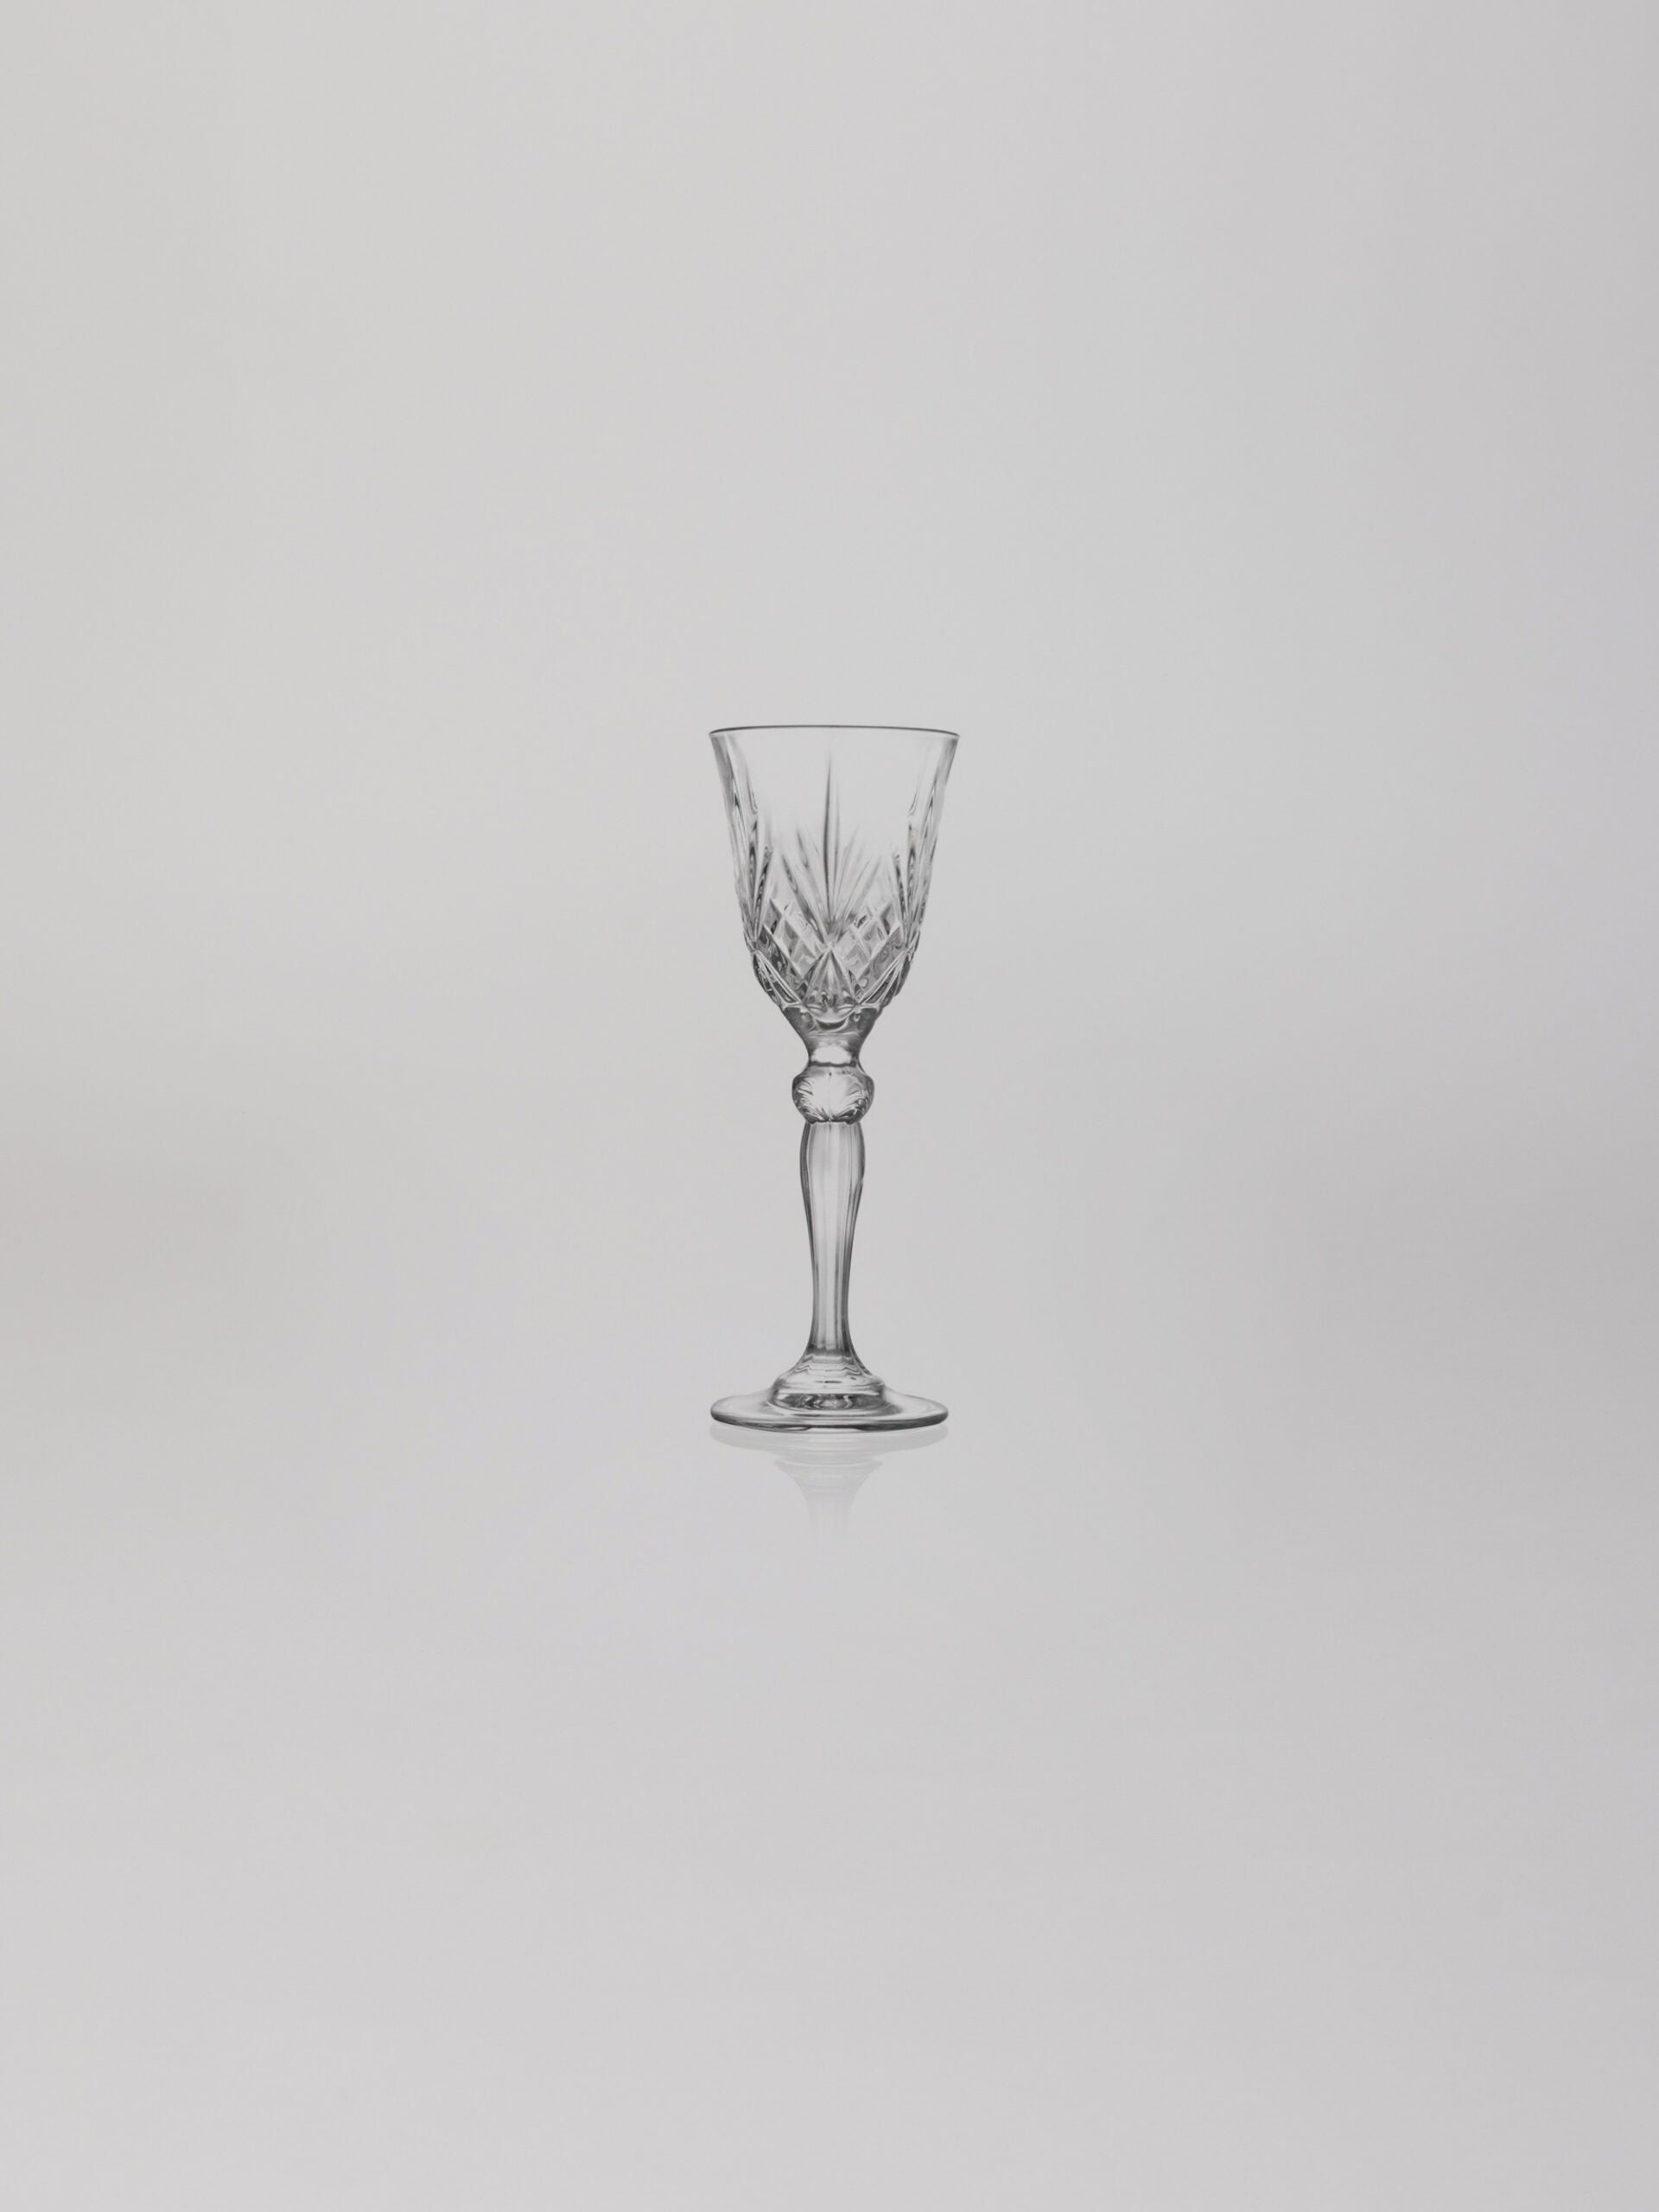 כוס גביע ליקר מלודיה מזכוכית קריסטל על רקע אפור בהיר